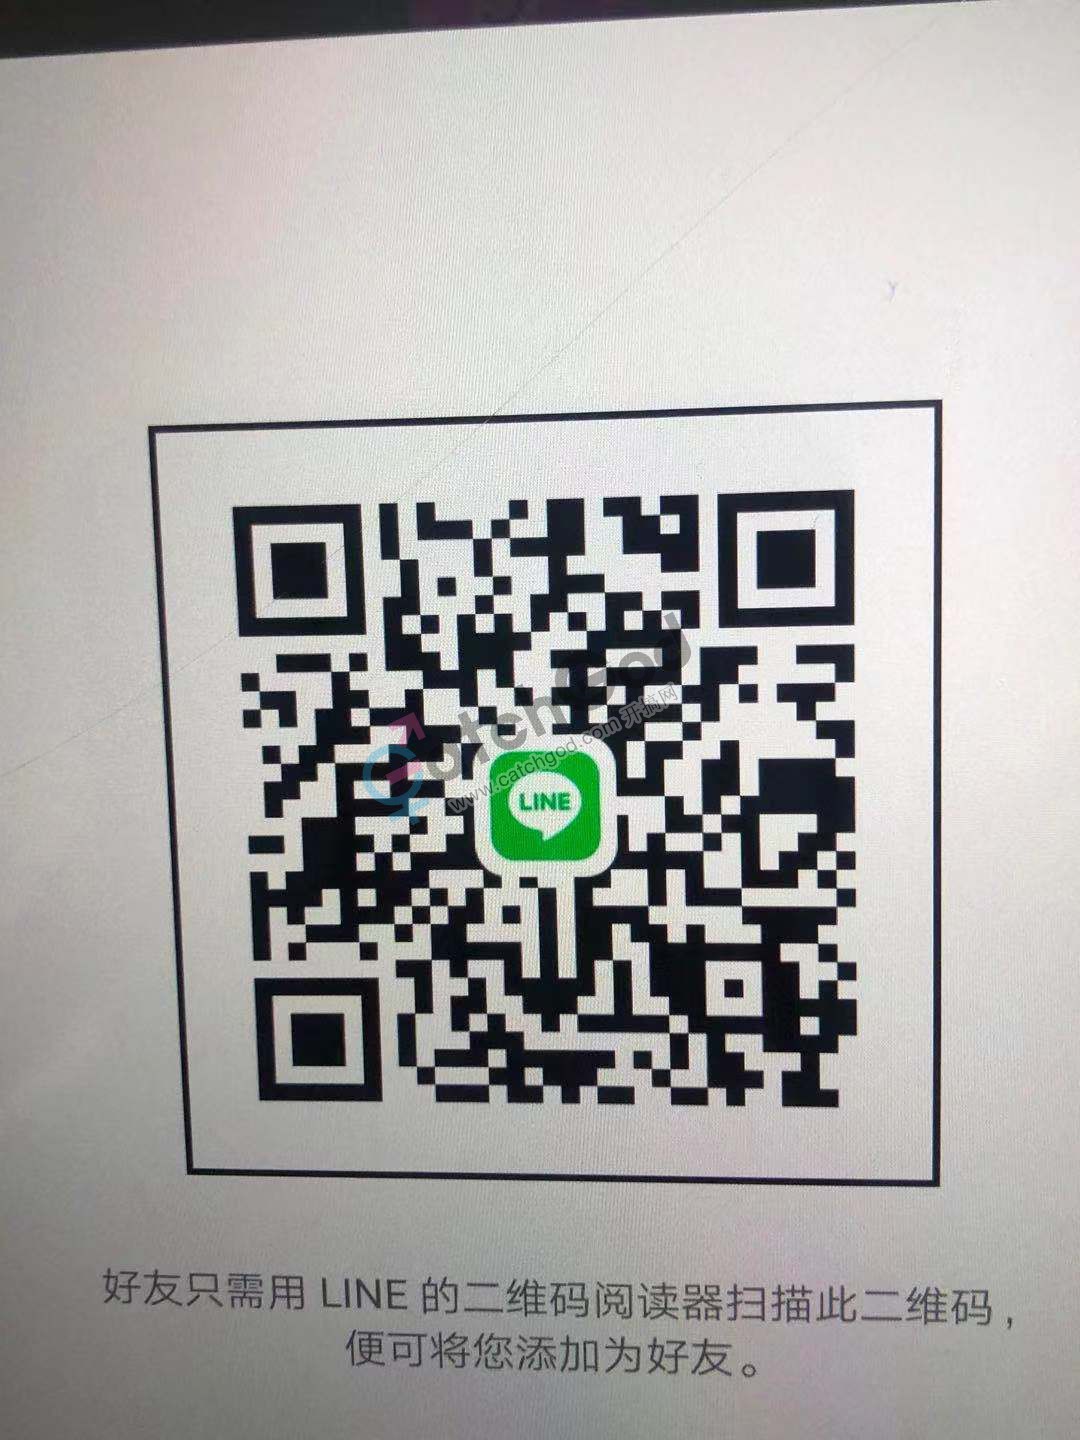 WeChat Image_20201224162502.jpg